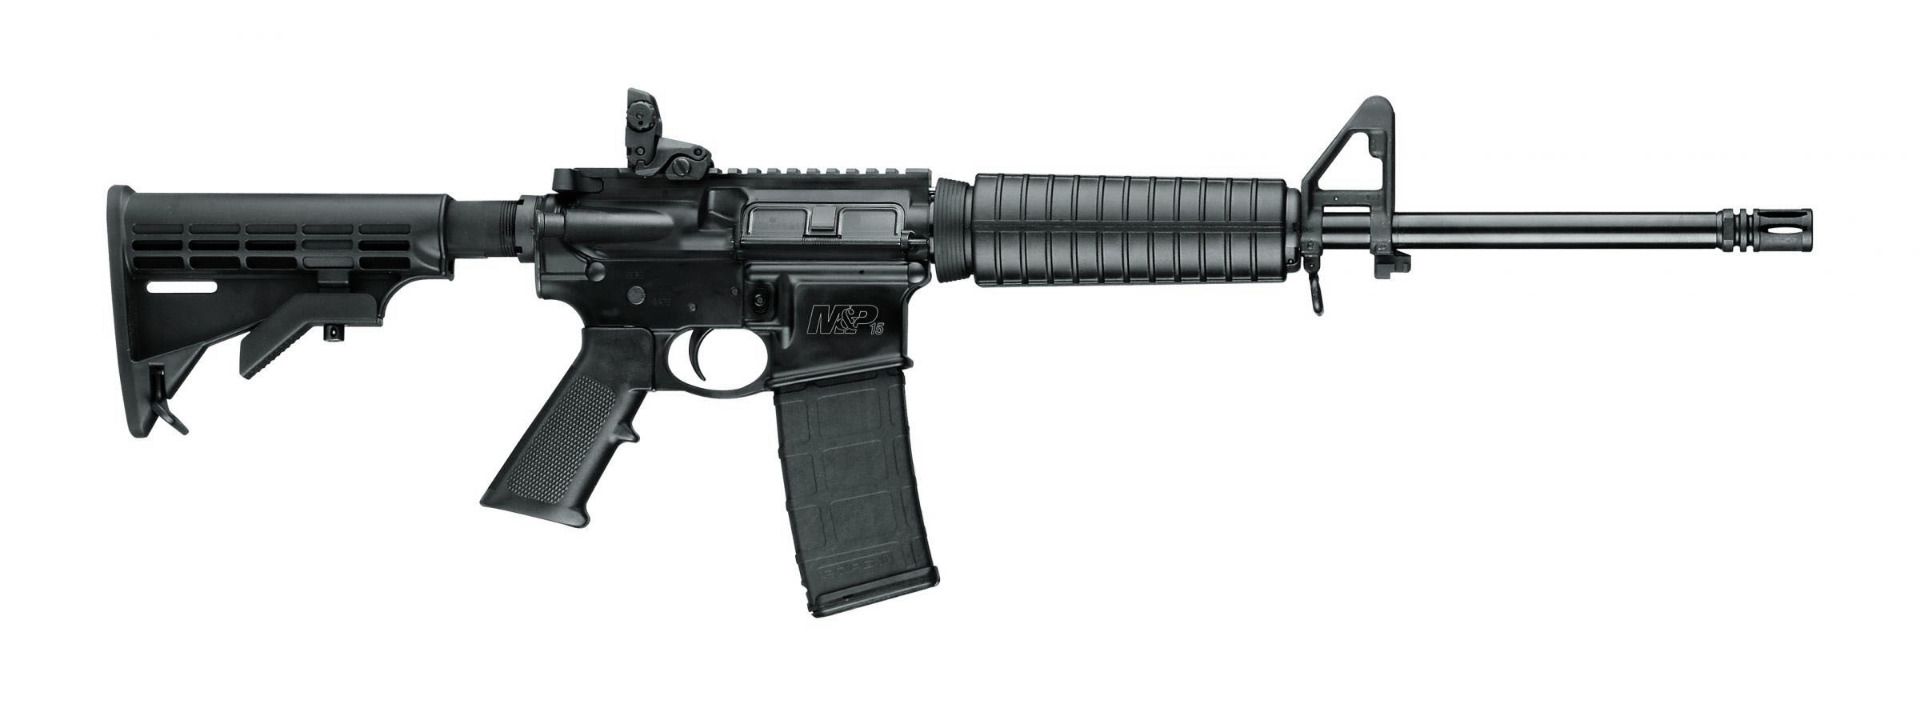 Buy Smith & Wesson M&P15 Sport II Semi-Auto Rifle - 5.56 NATO Online